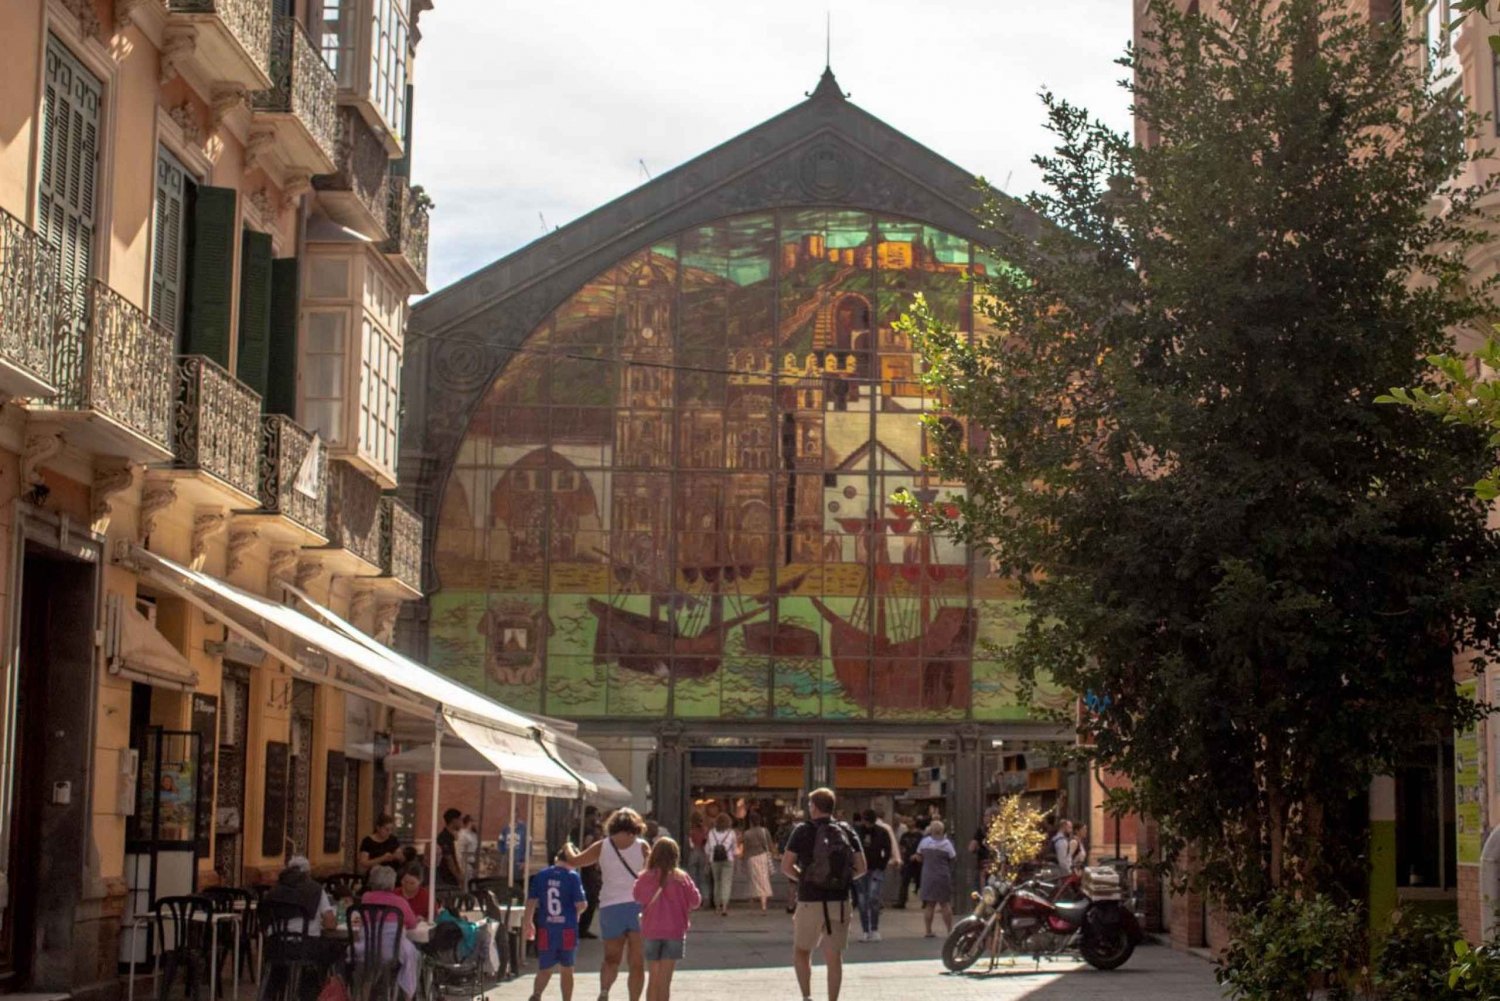 Tour door het historische centrum van Málaga langs de Mercado